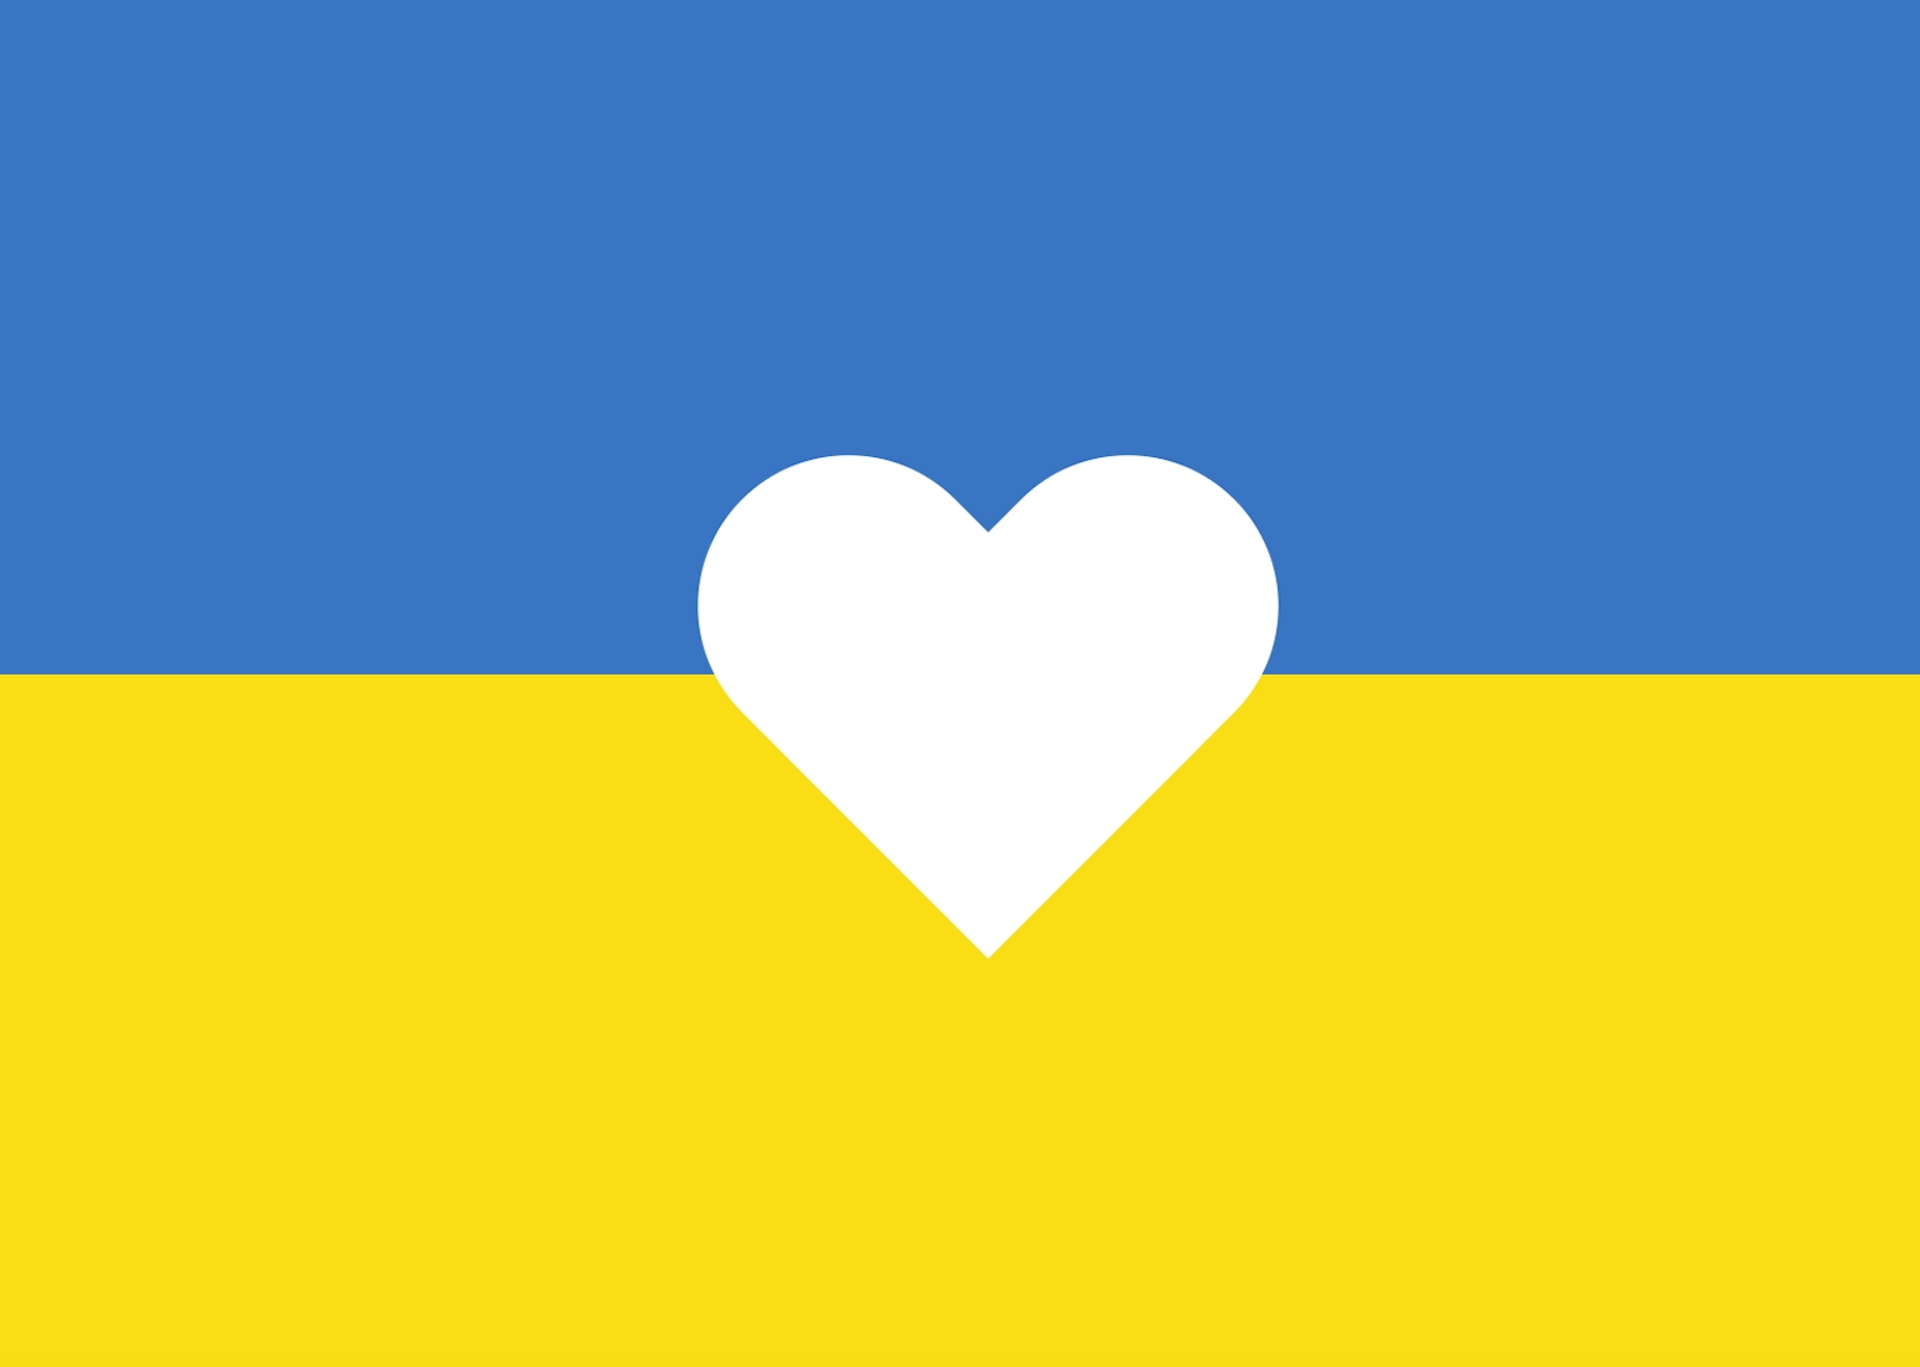 האמנים של אוקראינה צריכים את תמיכתכם, כך תוכלו גם אתם לעזור